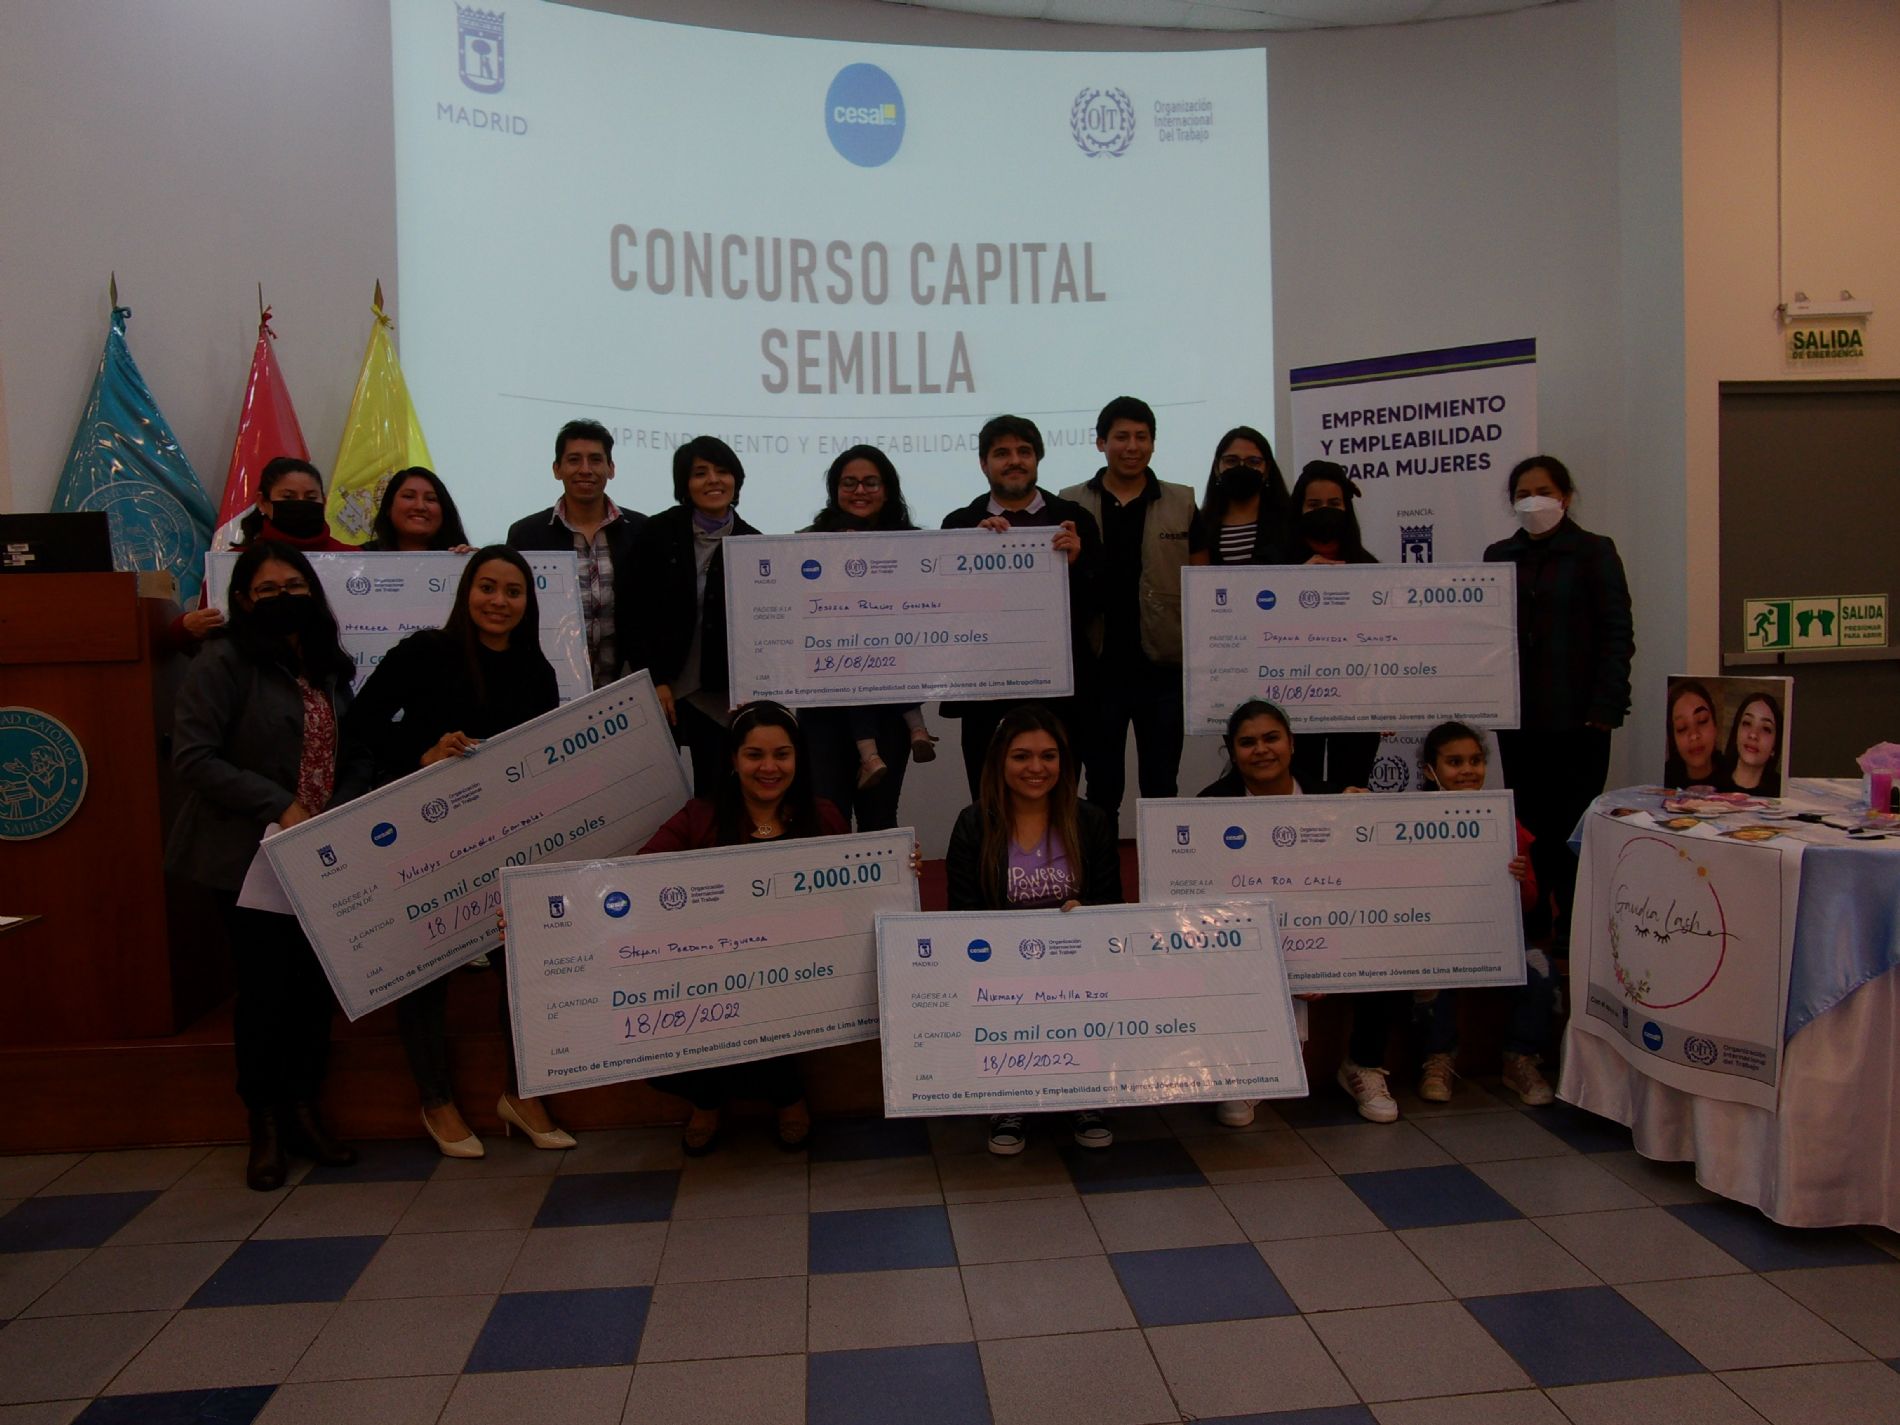 23 mujeres emprendedoras, peruanas y venezolanas, recibieron capital semilla para sus negocios en Lima (Perú)